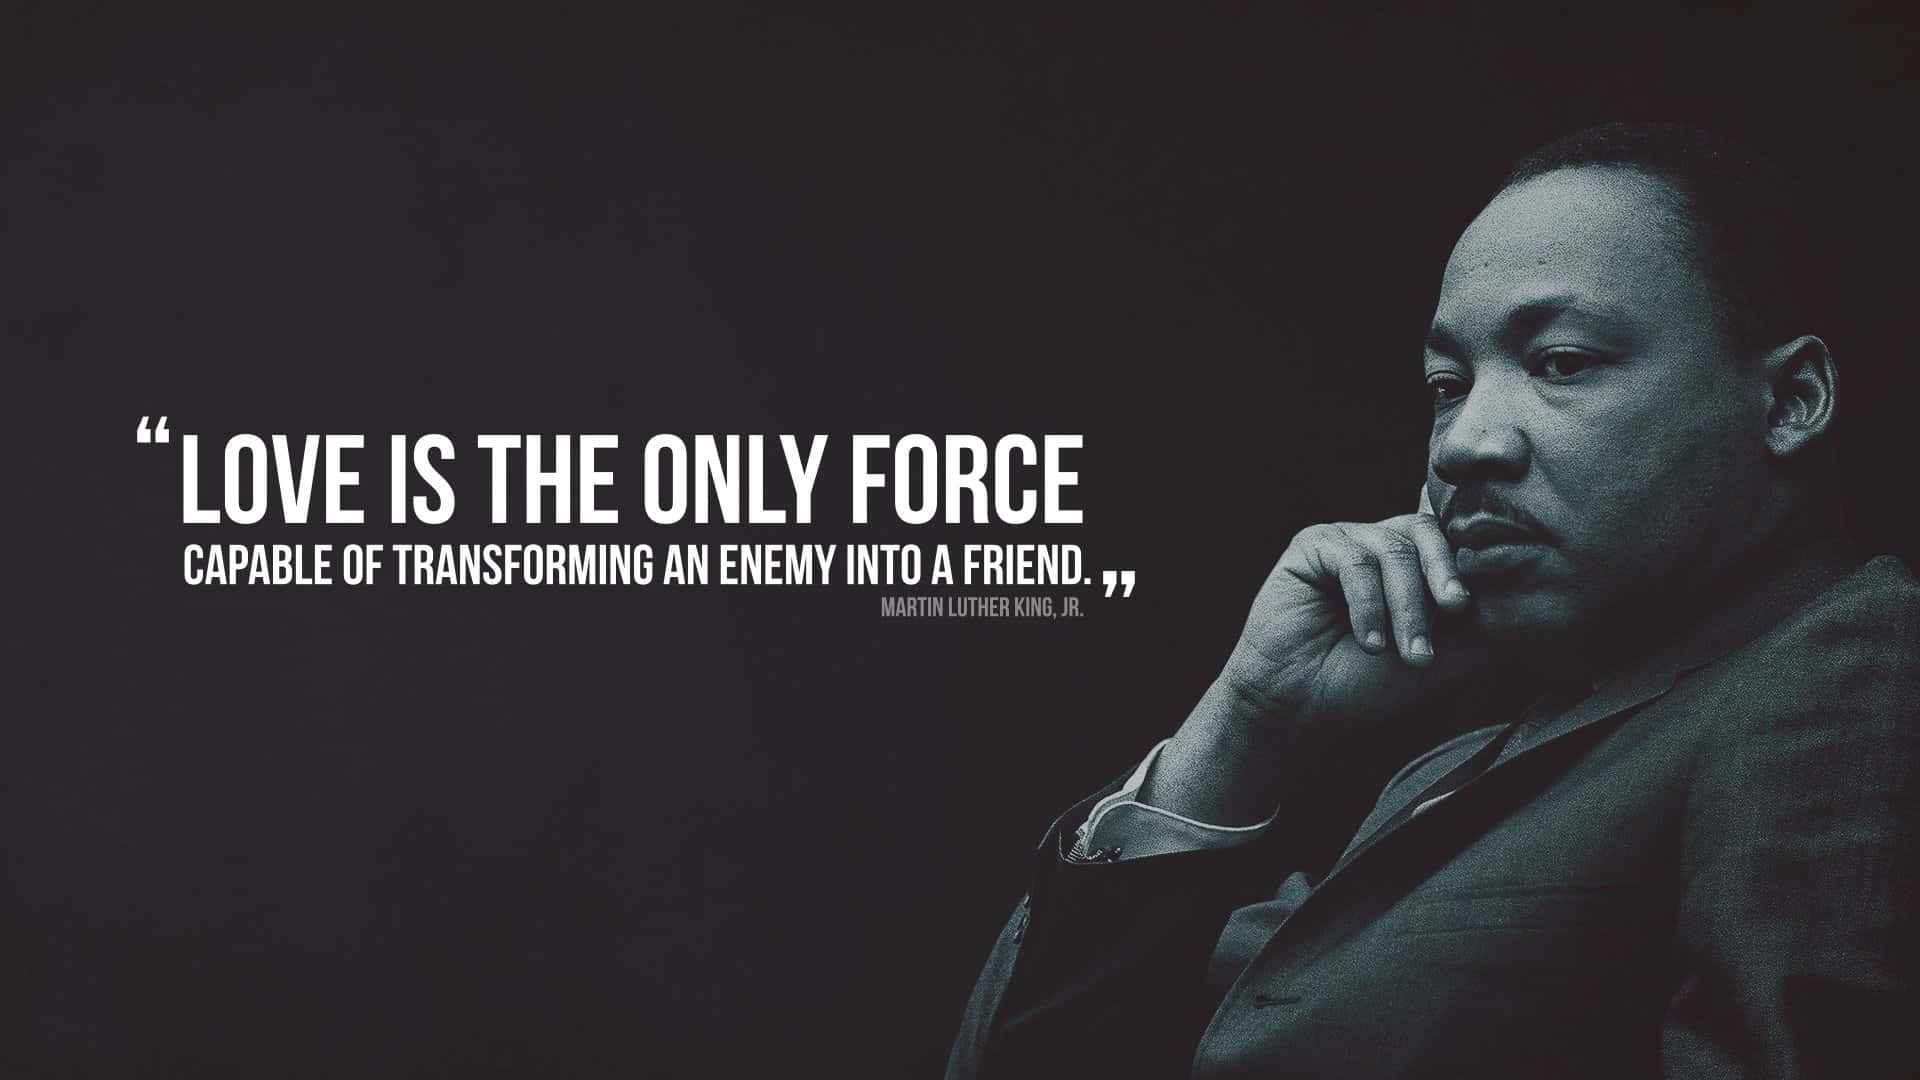 Papelde Parede Inspirado Em Martin Luther King Papel de Parede